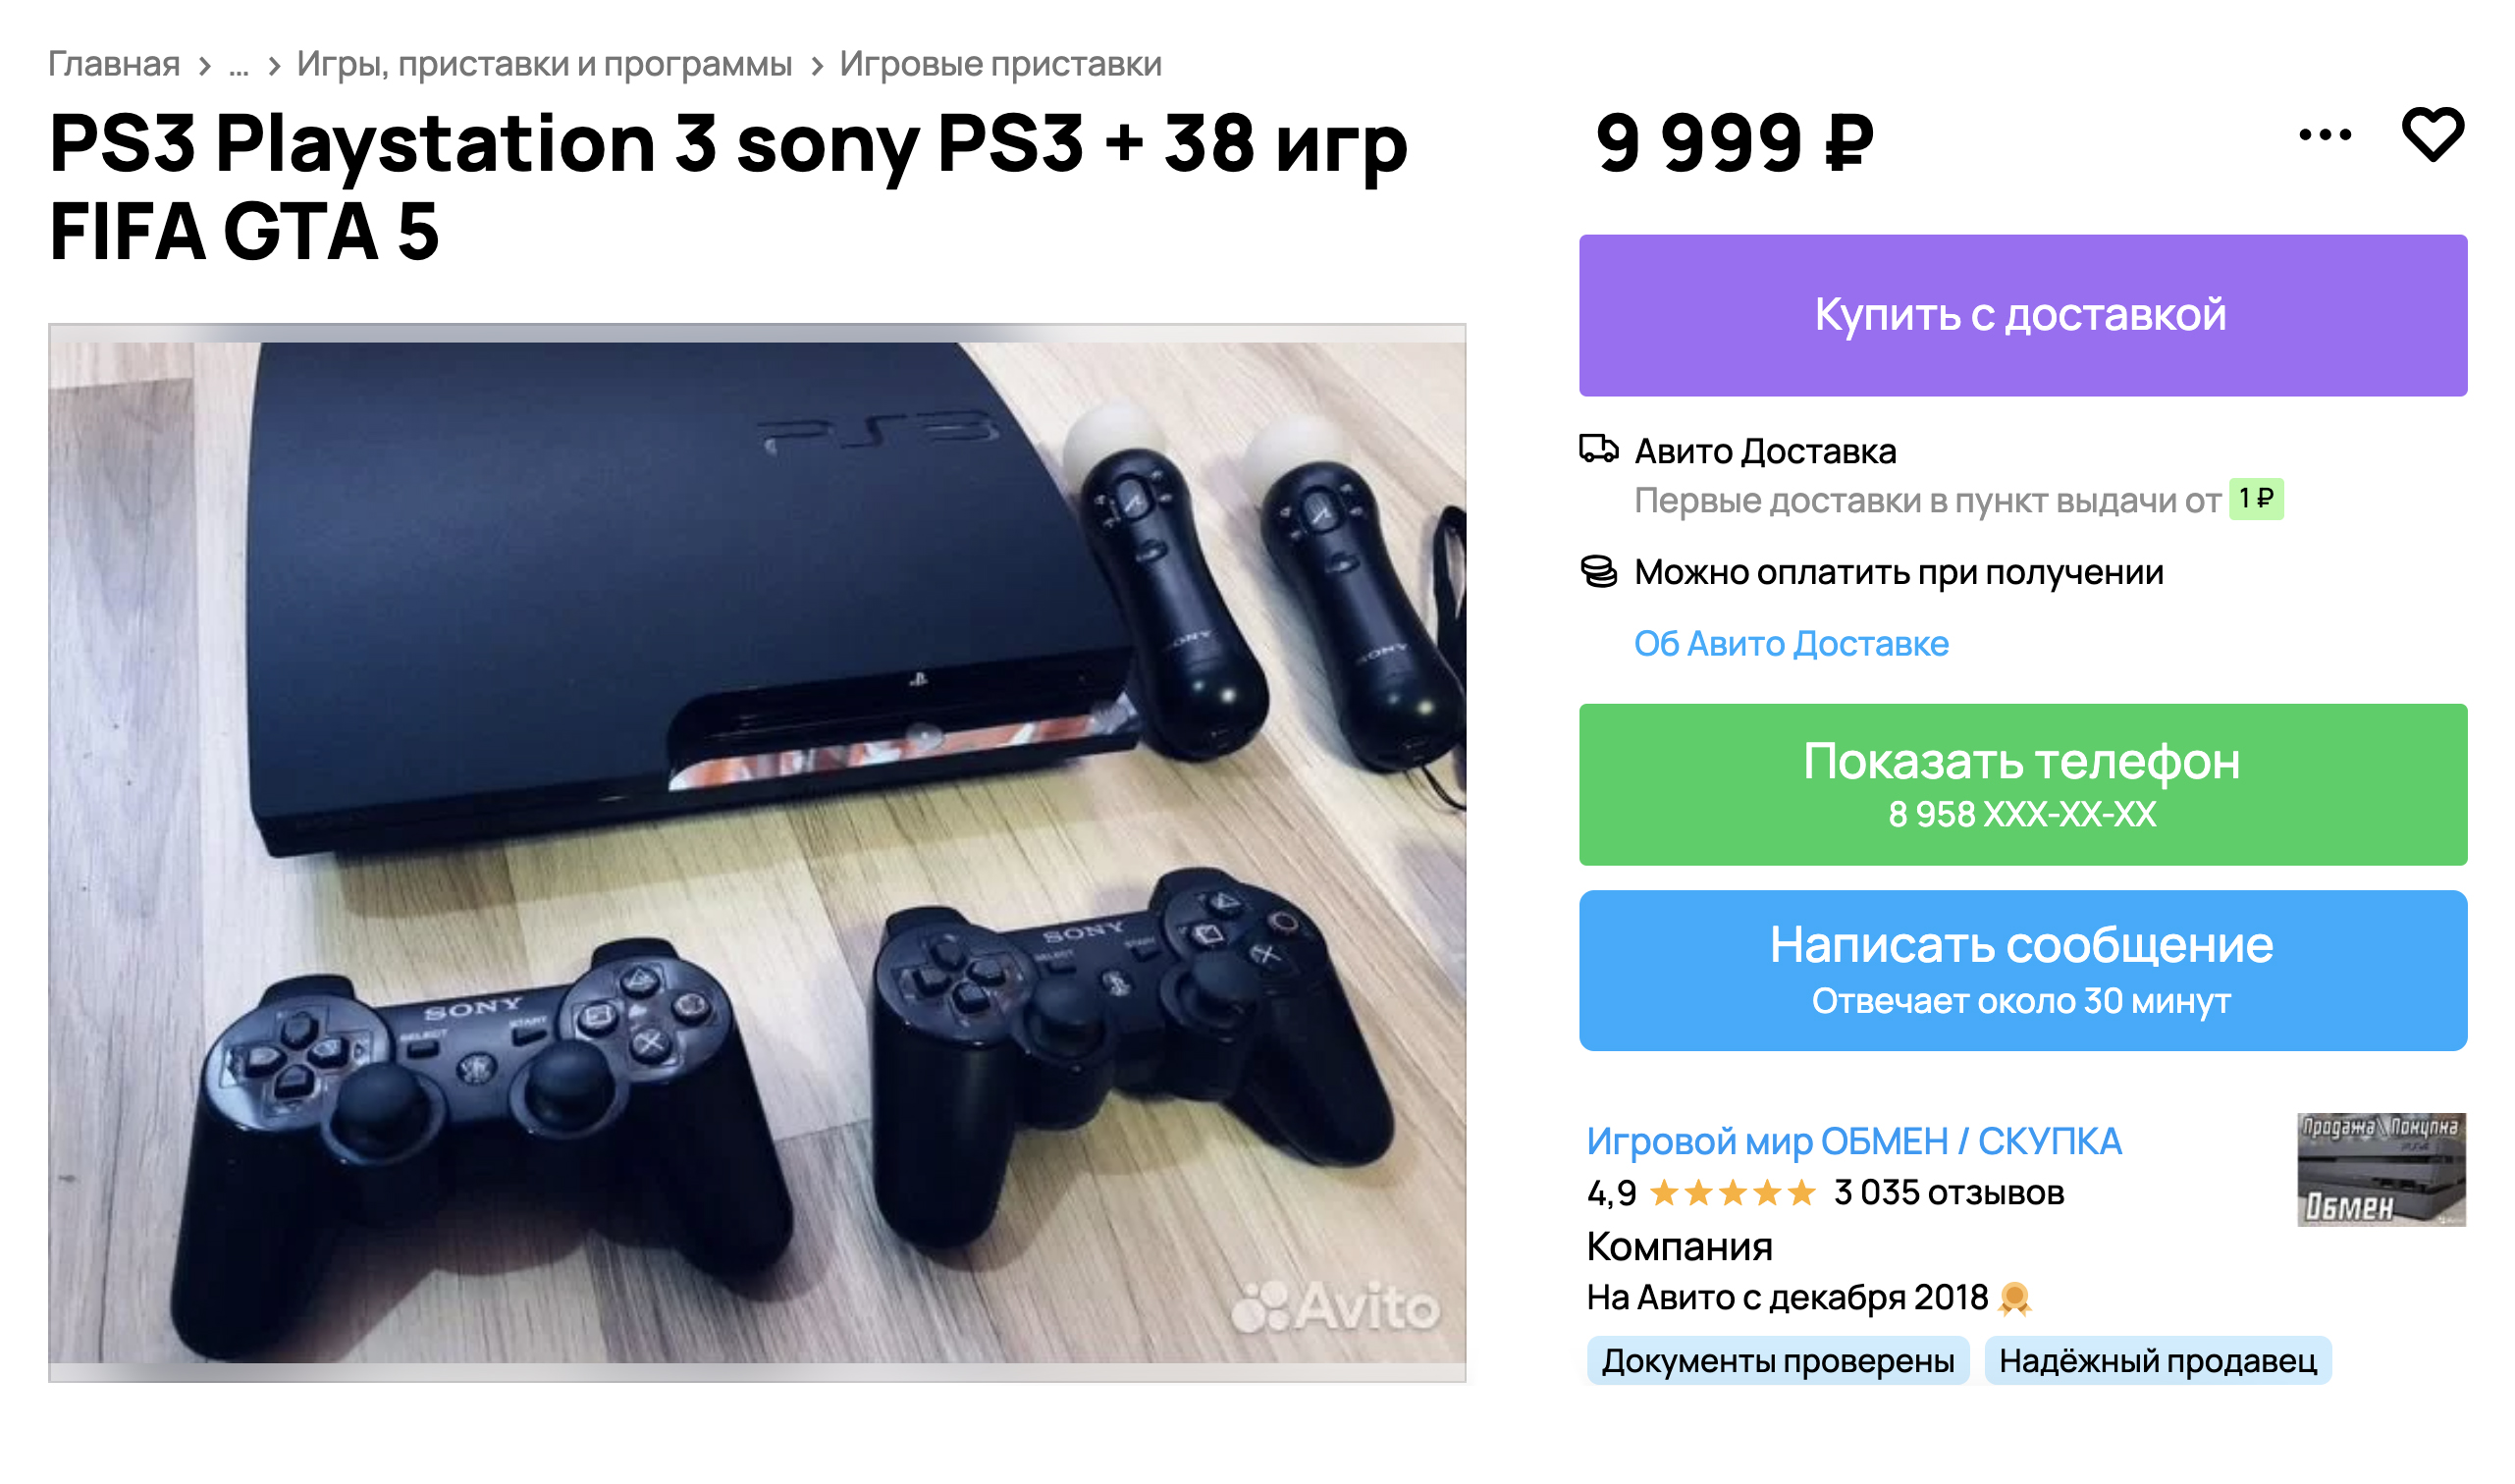 Объявление от специализированного магазина. Цена немного выше, чем у частников, на консоли много игр, есть два геймпада. Источник: avito.ru